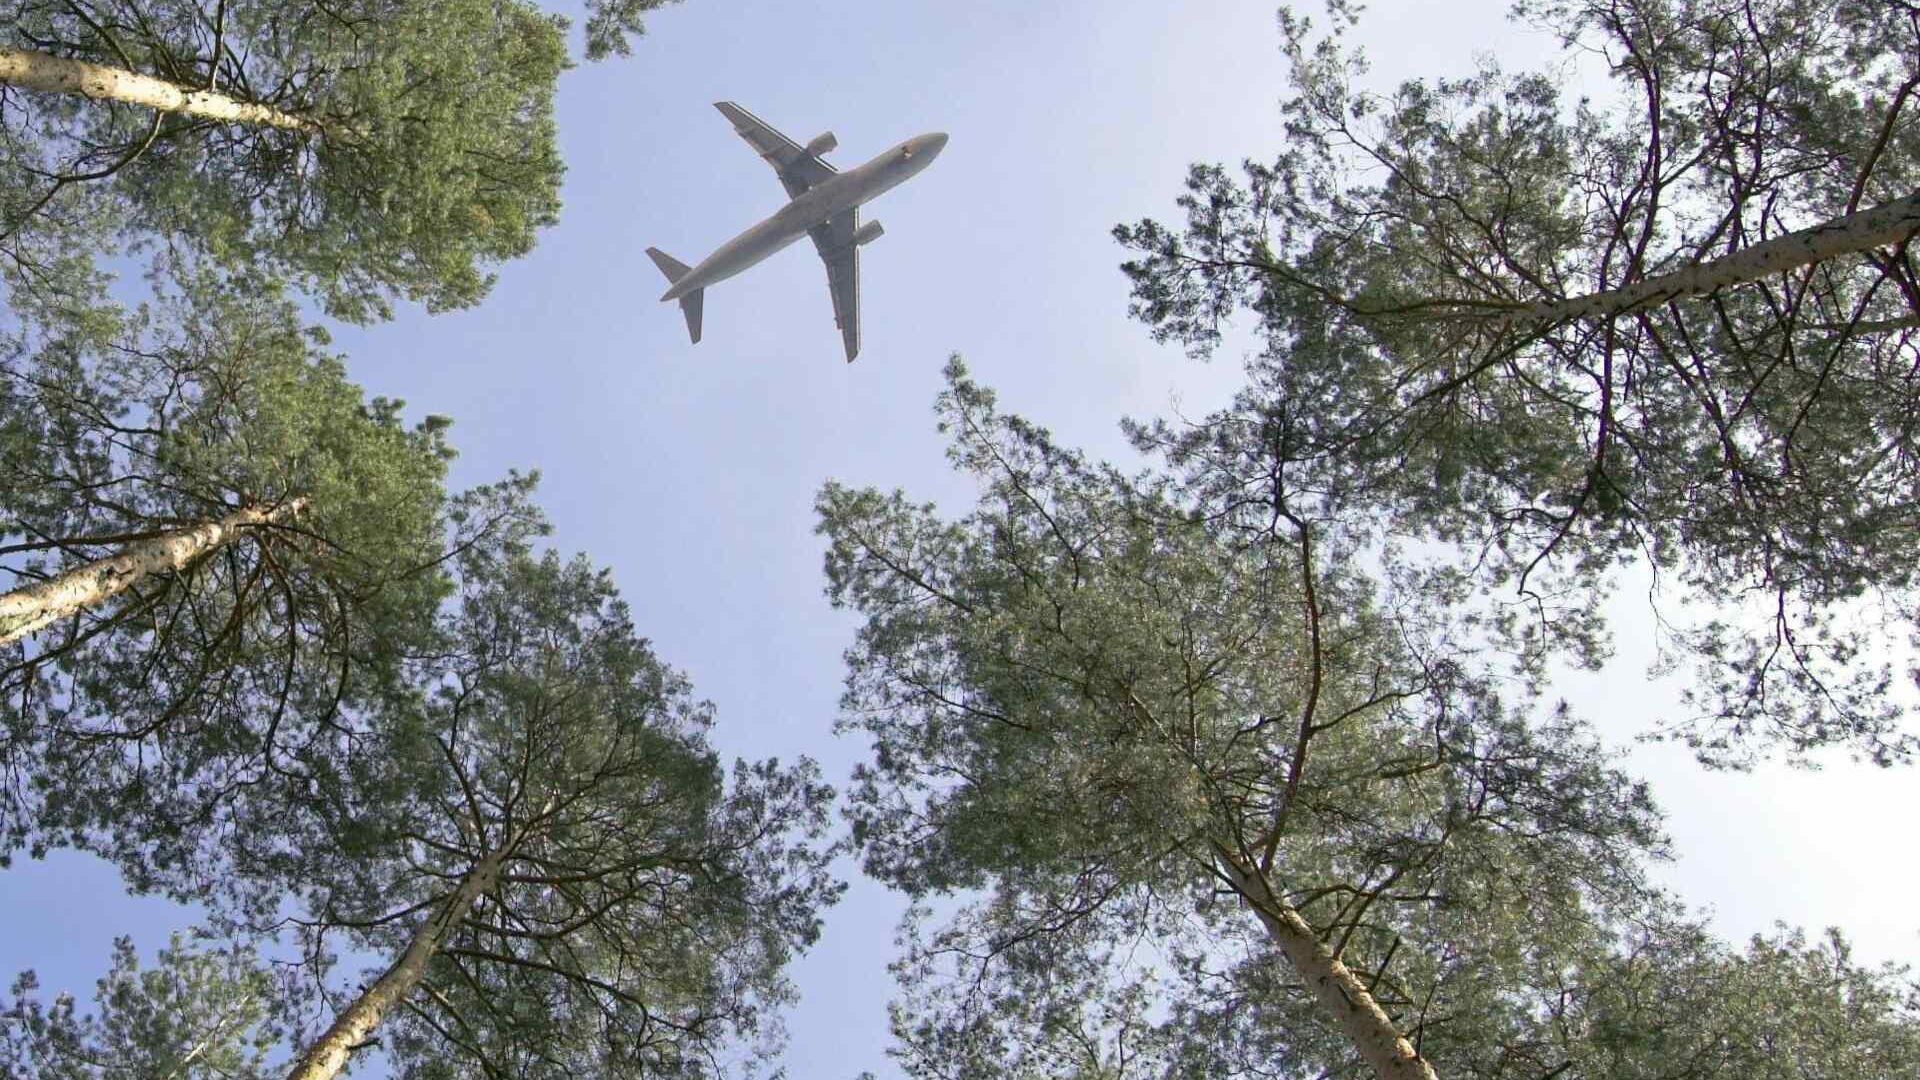 Schweizer Luftwaffe: Die Luftfahrt und die von ihr verwendeten Treibstoffe können einen wichtigen Beitrag zur Bekämpfung des Klimawandels leisten